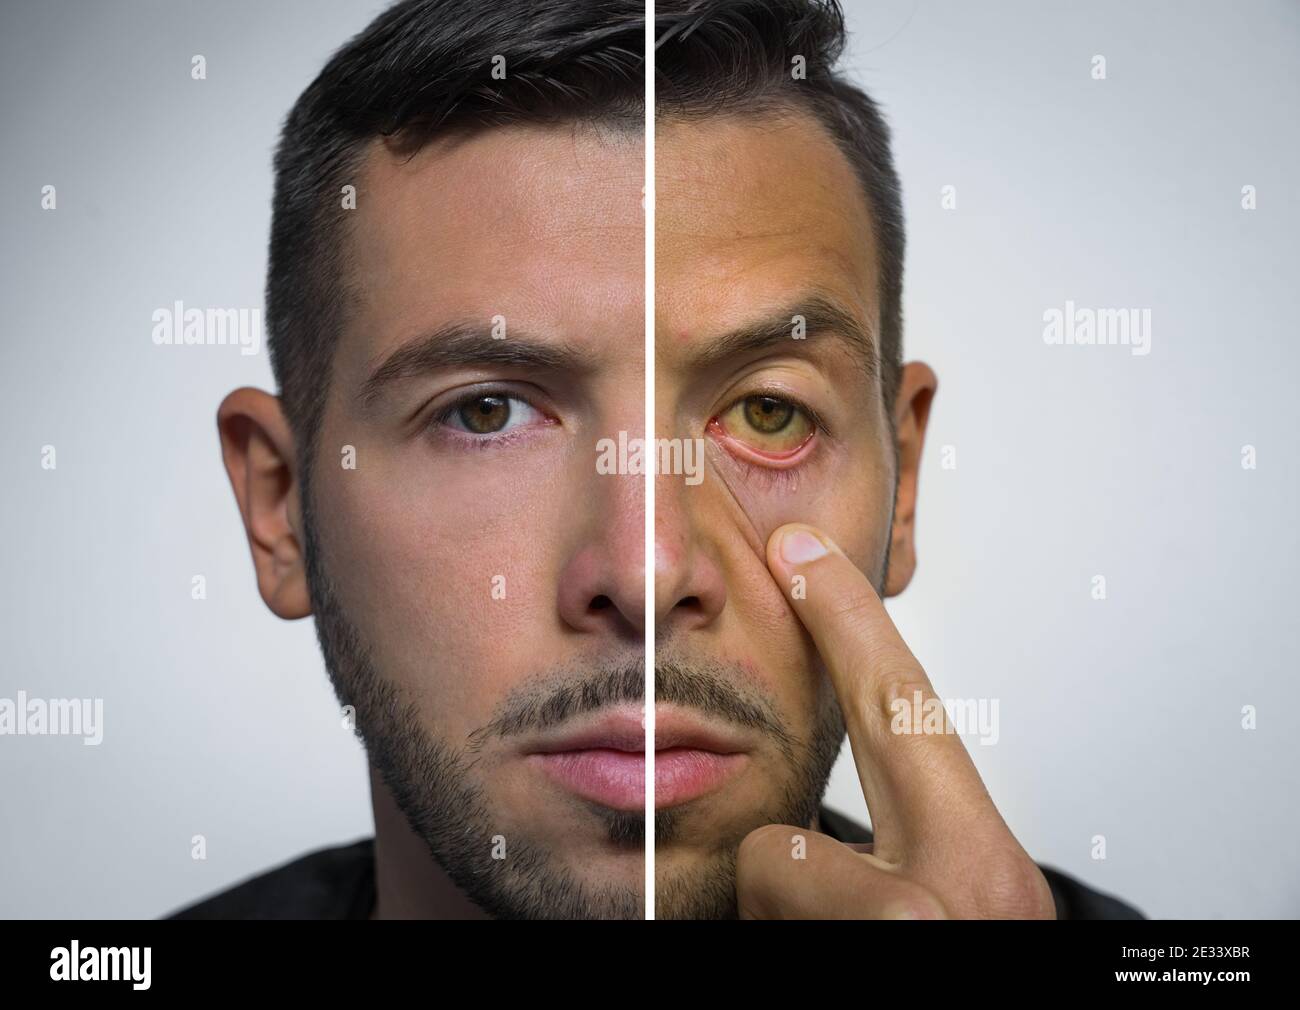 Le visage de l'homme divisé en deux parties, l'une saine et l'autre  malsaine. Alcool Photo Stock - Alamy